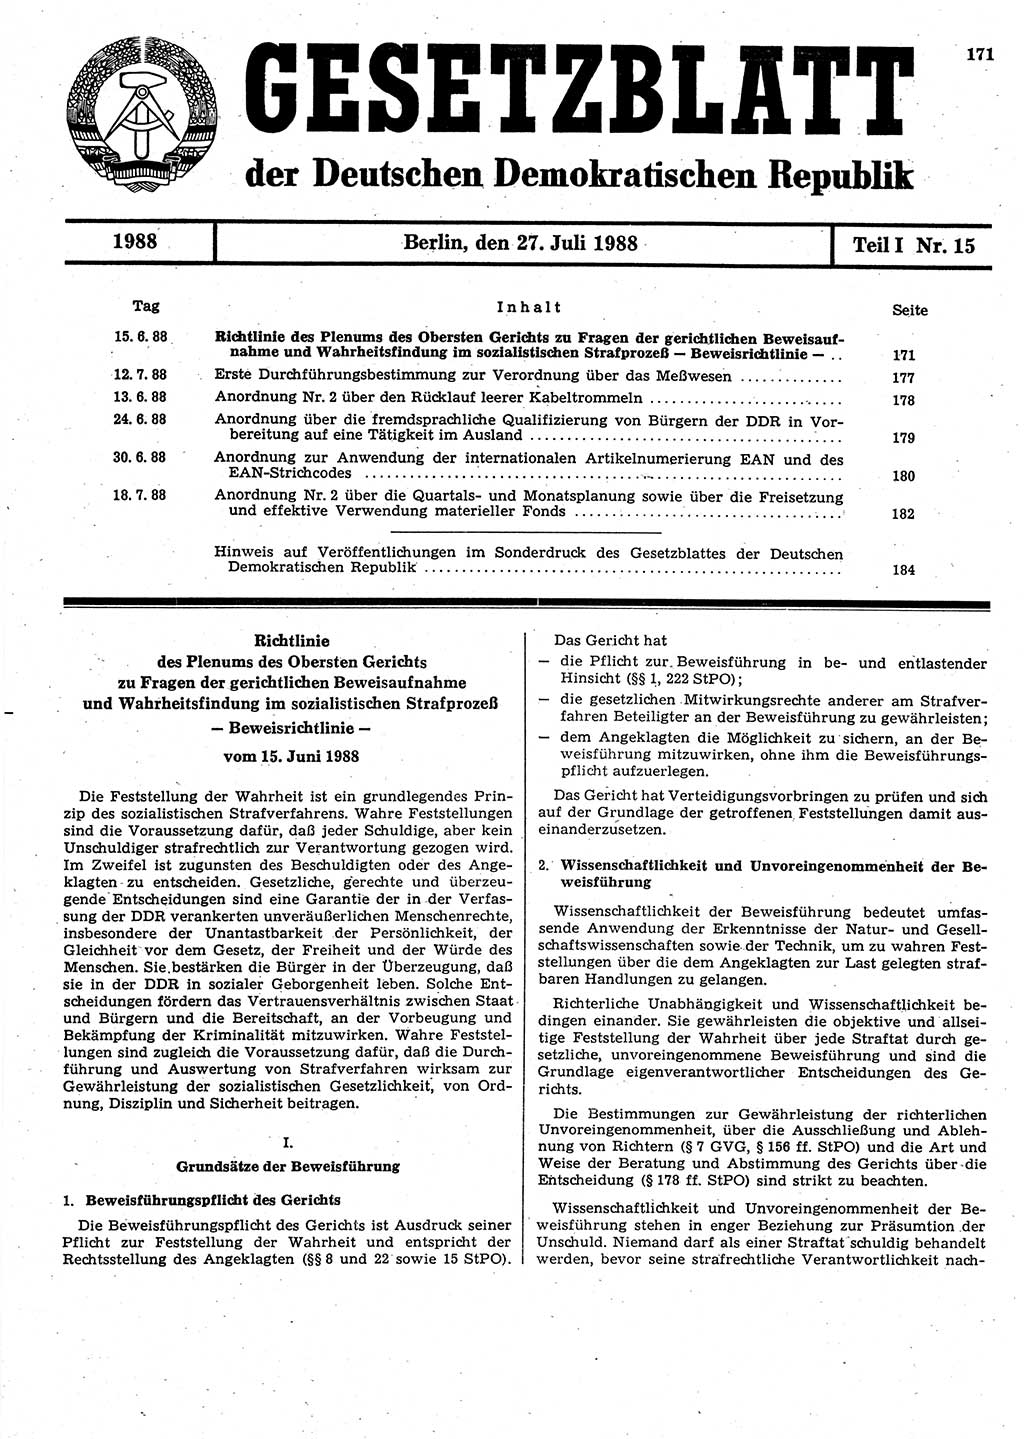 Gesetzblatt (GBl.) der Deutschen Demokratischen Republik (DDR) Teil Ⅰ 1988, Seite 171 (GBl. DDR Ⅰ 1988, S. 171)